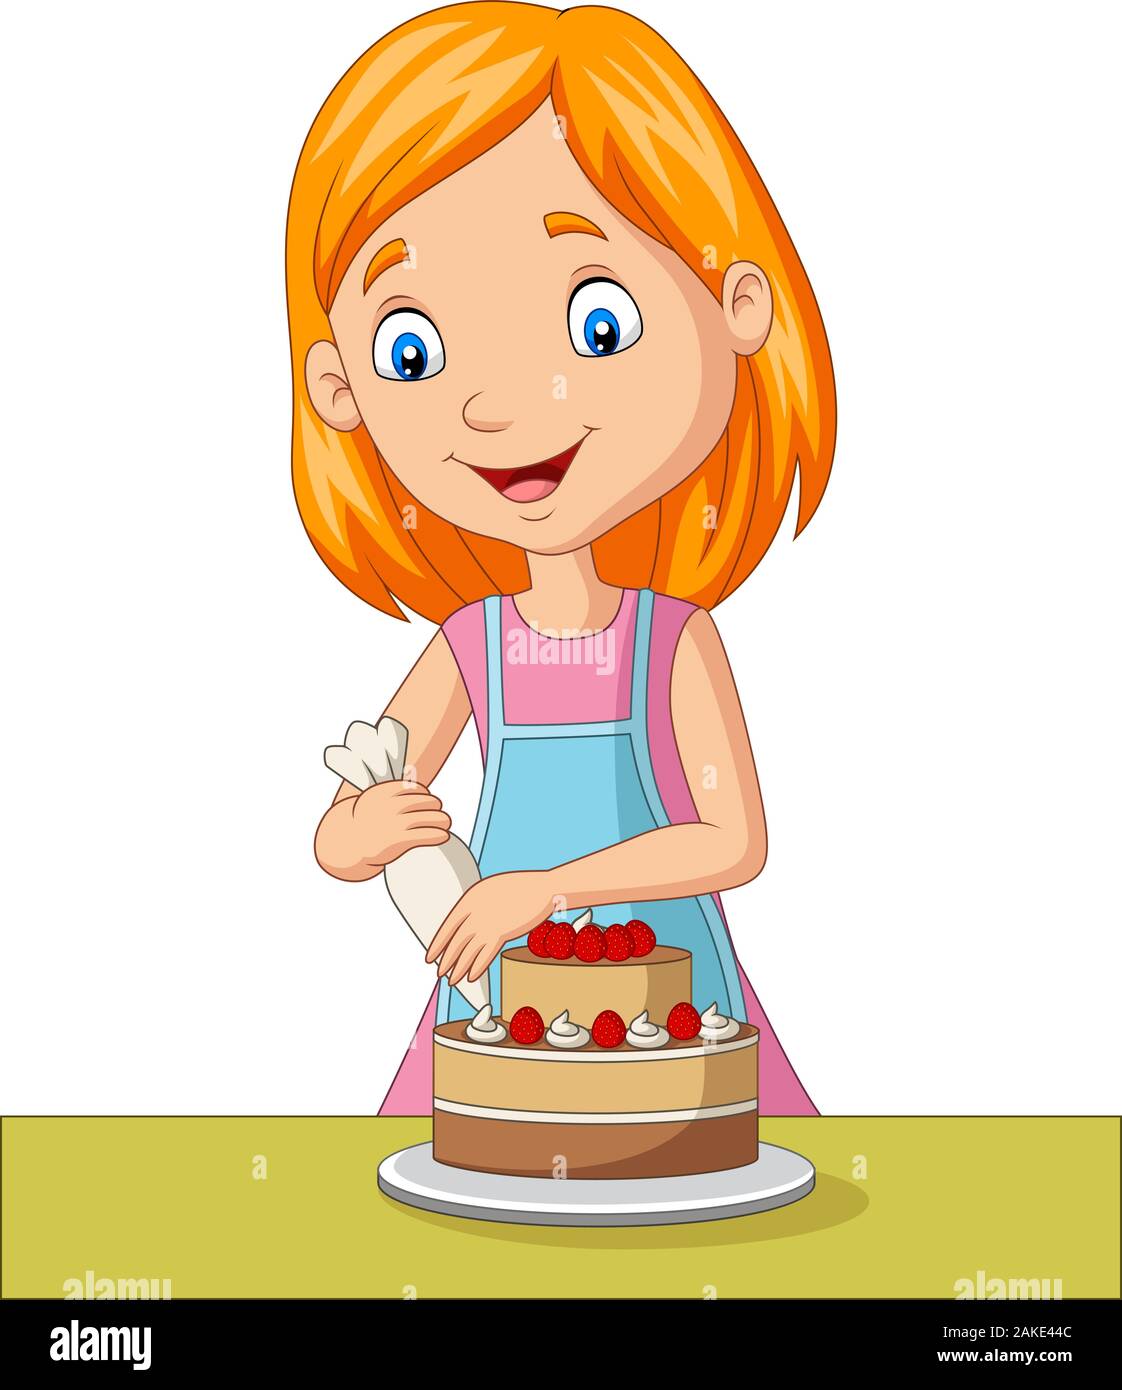 Cartoon girl decorating a cake Stock Vector Image & Art - Alamy